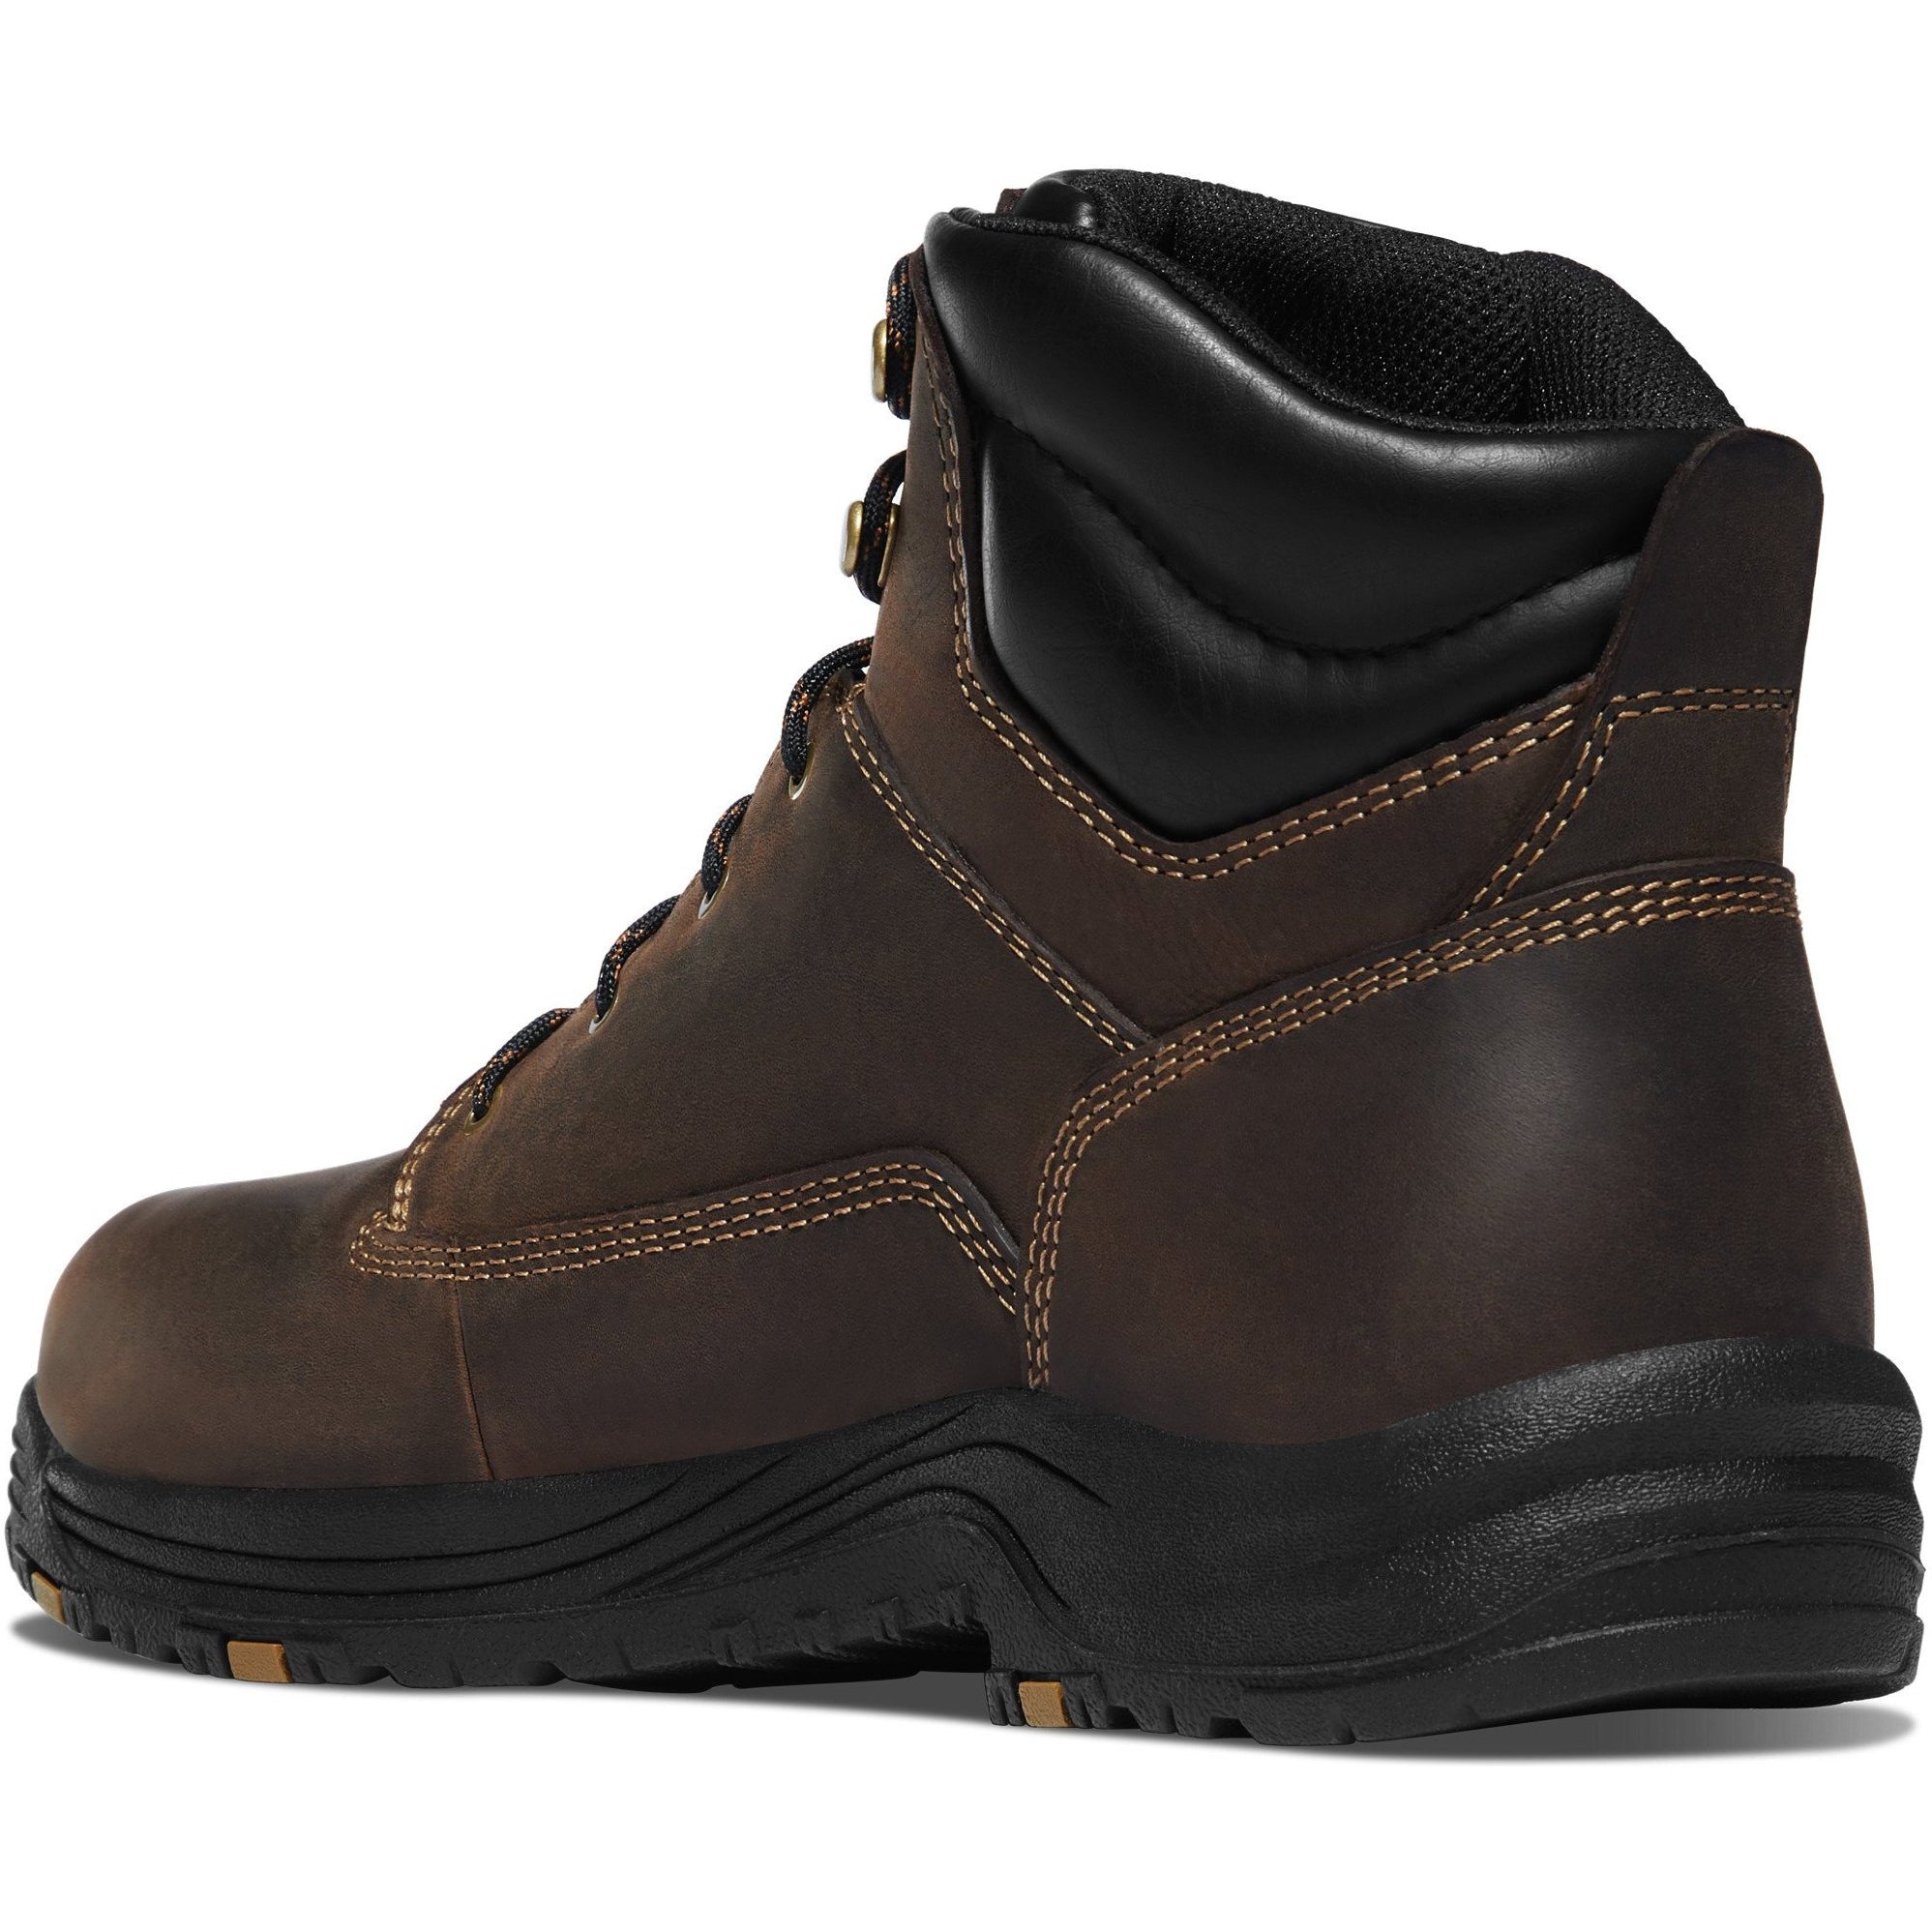 Danner Men's Caliper 6" Soft Toe WP Work Boot - Brown - 19452  - Overlook Boots